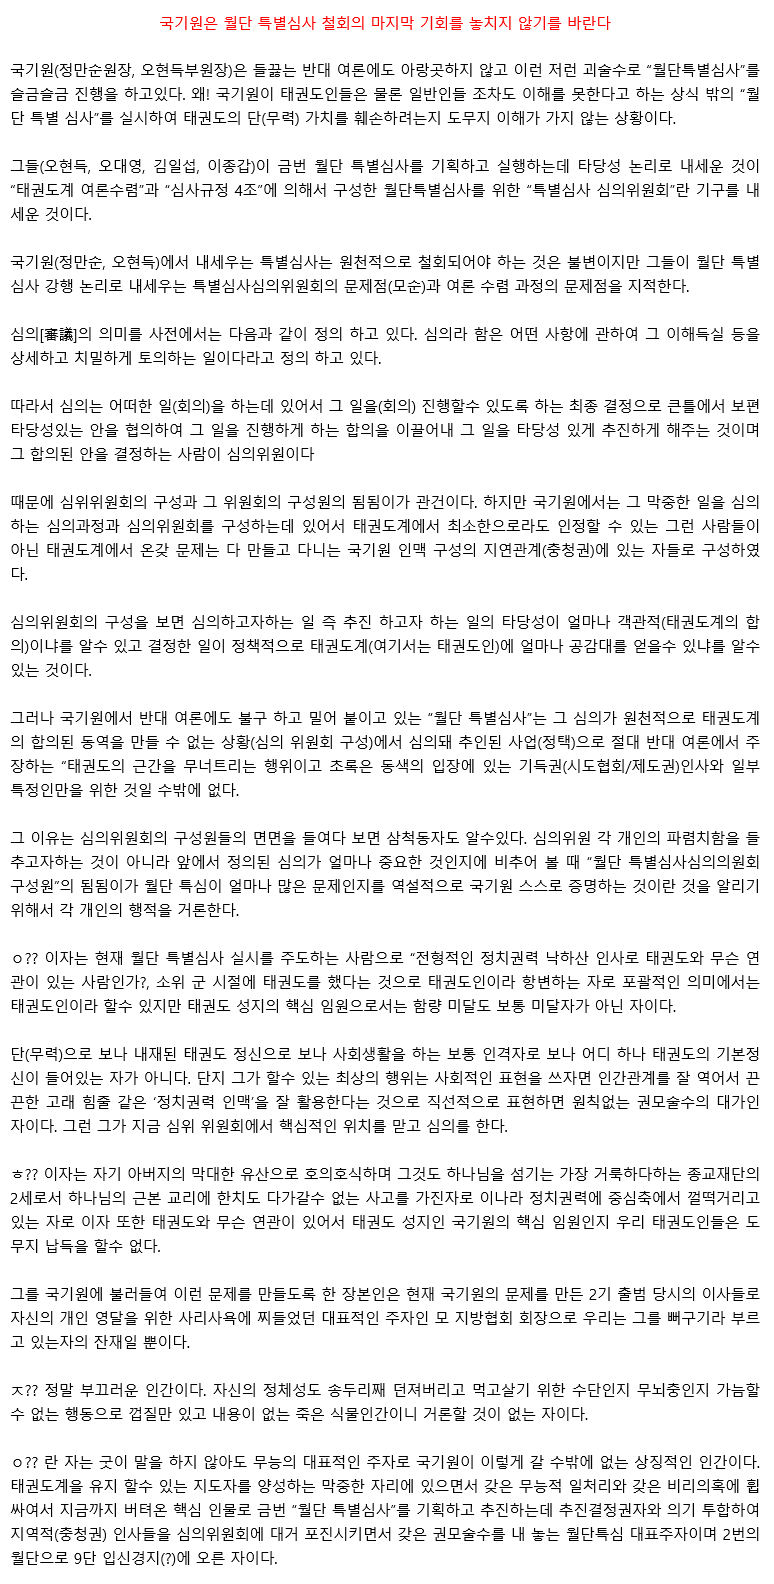 20151114_월단특별심사철회의마지막기회를놓치지않기를바란다_01.gif